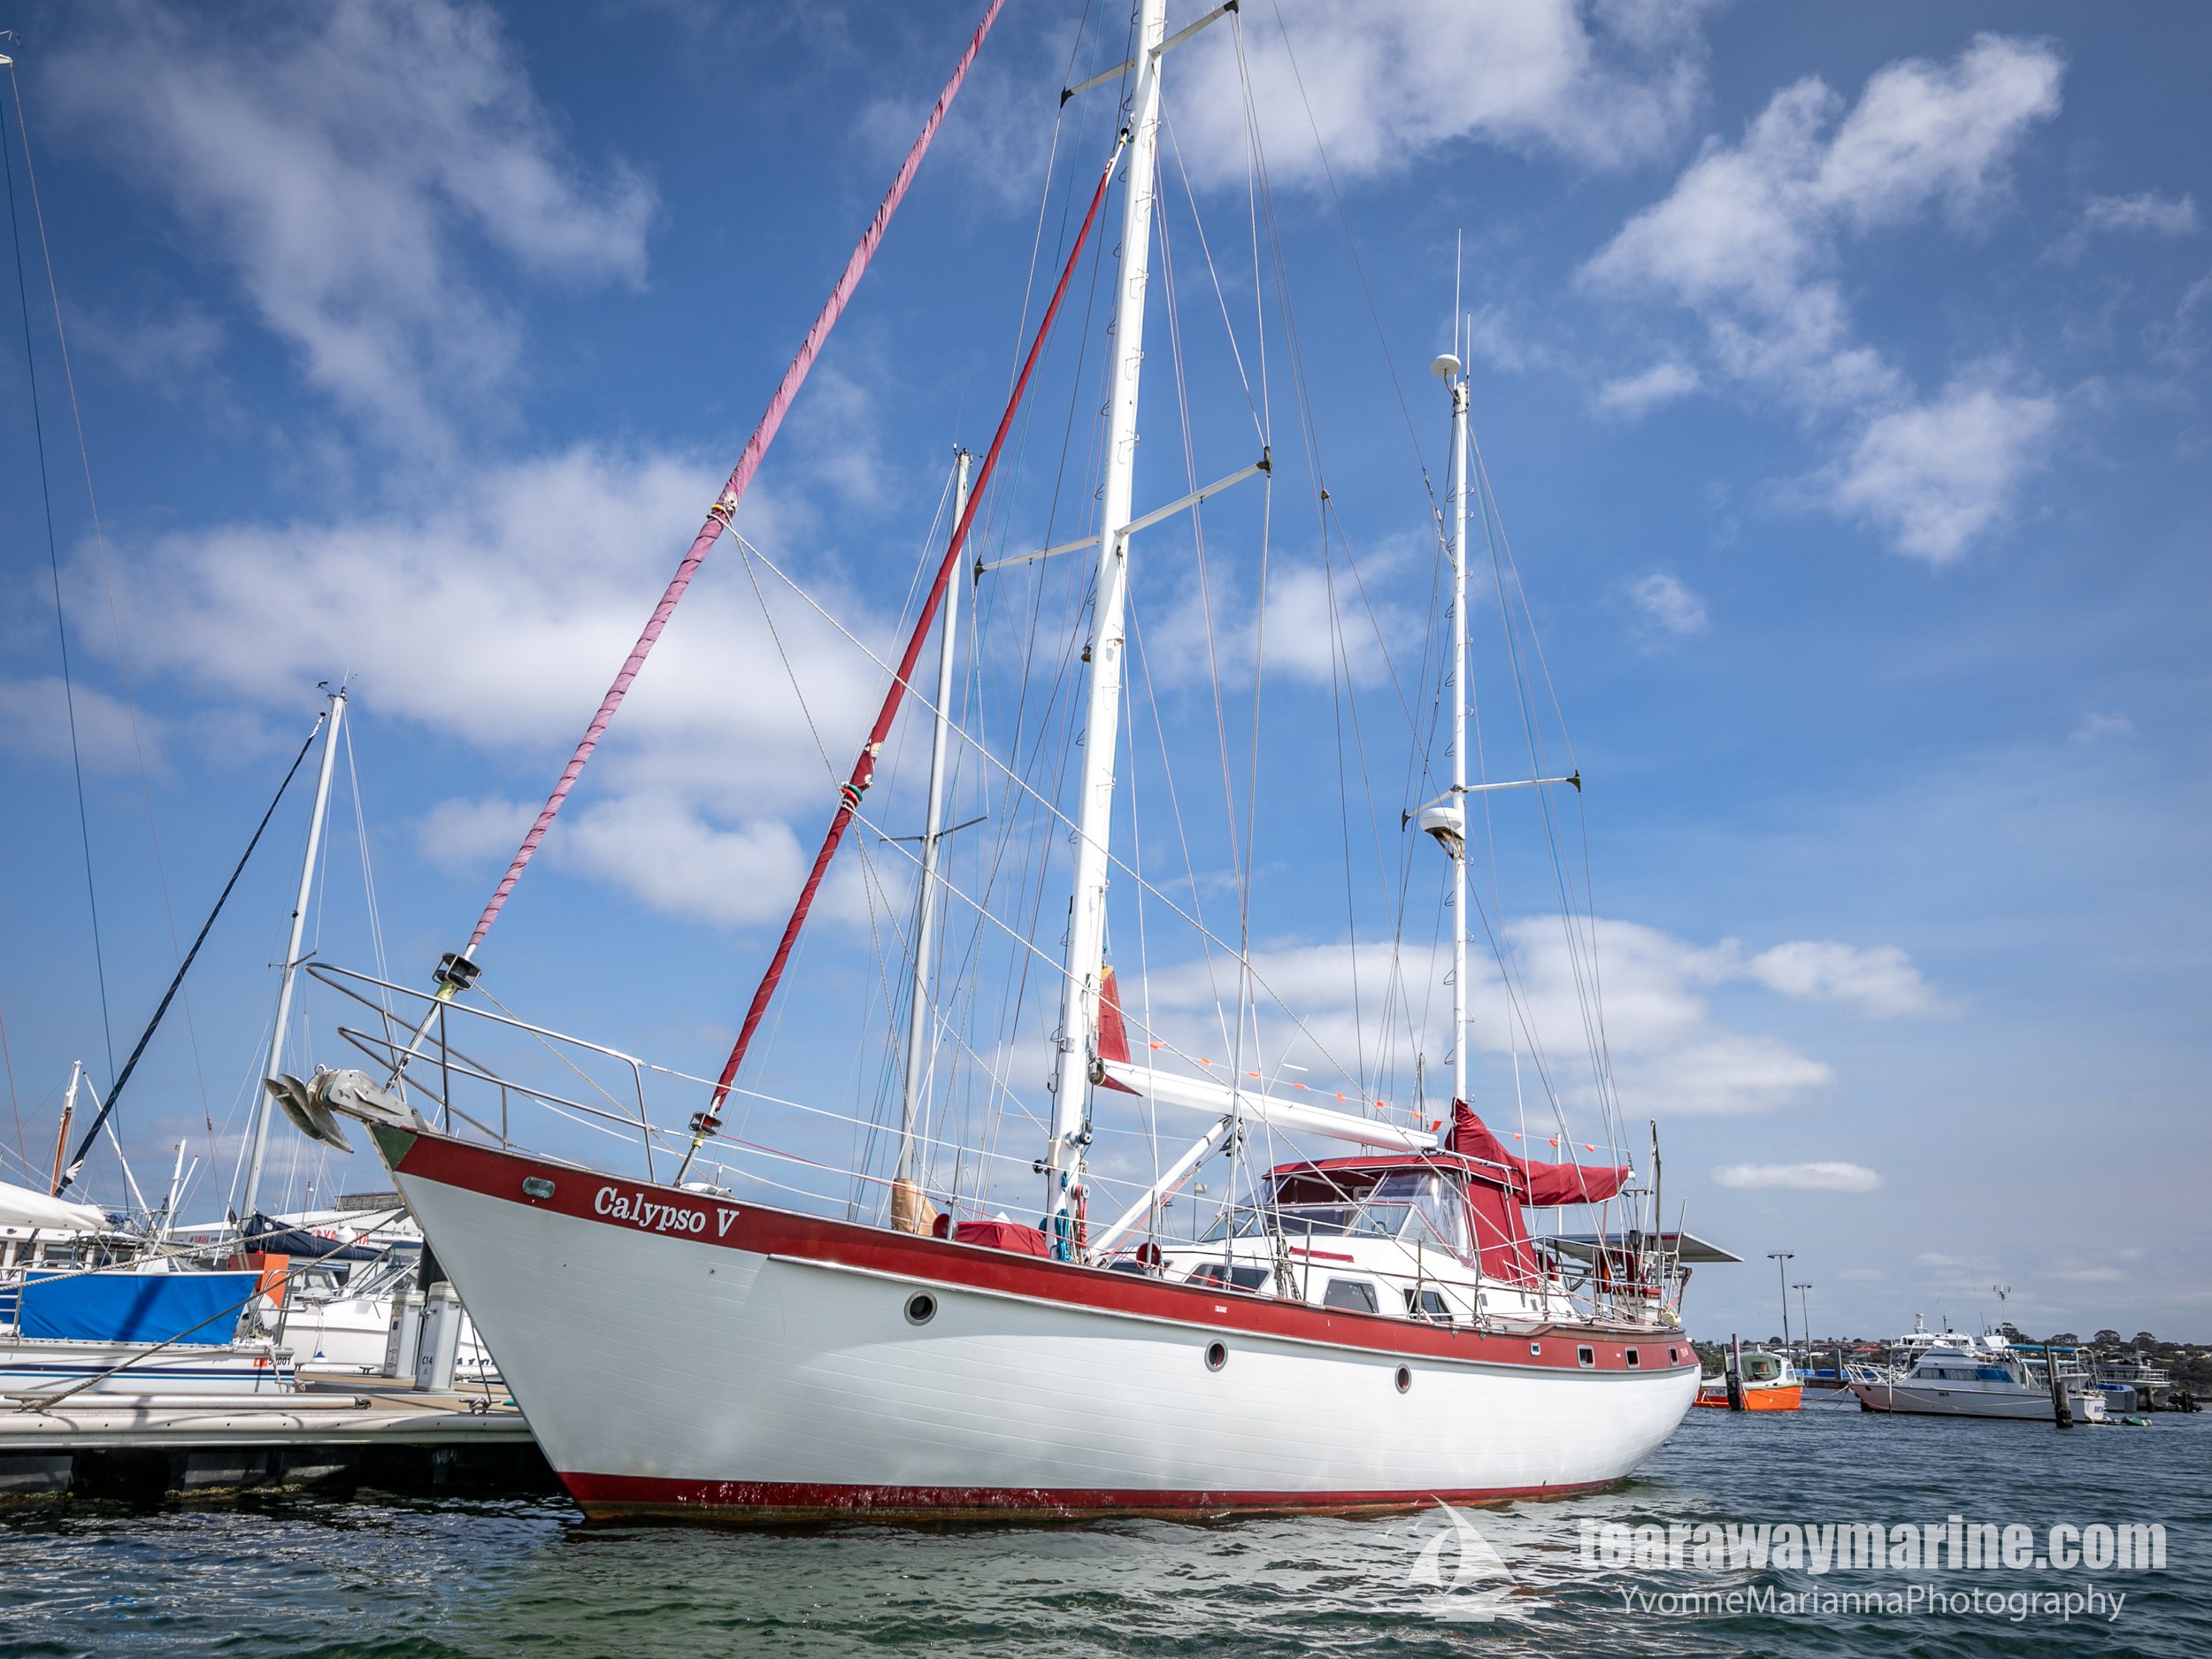 Calypso Yacht Tearaway Marine - Yvonne Marianna Photography-33.jpg